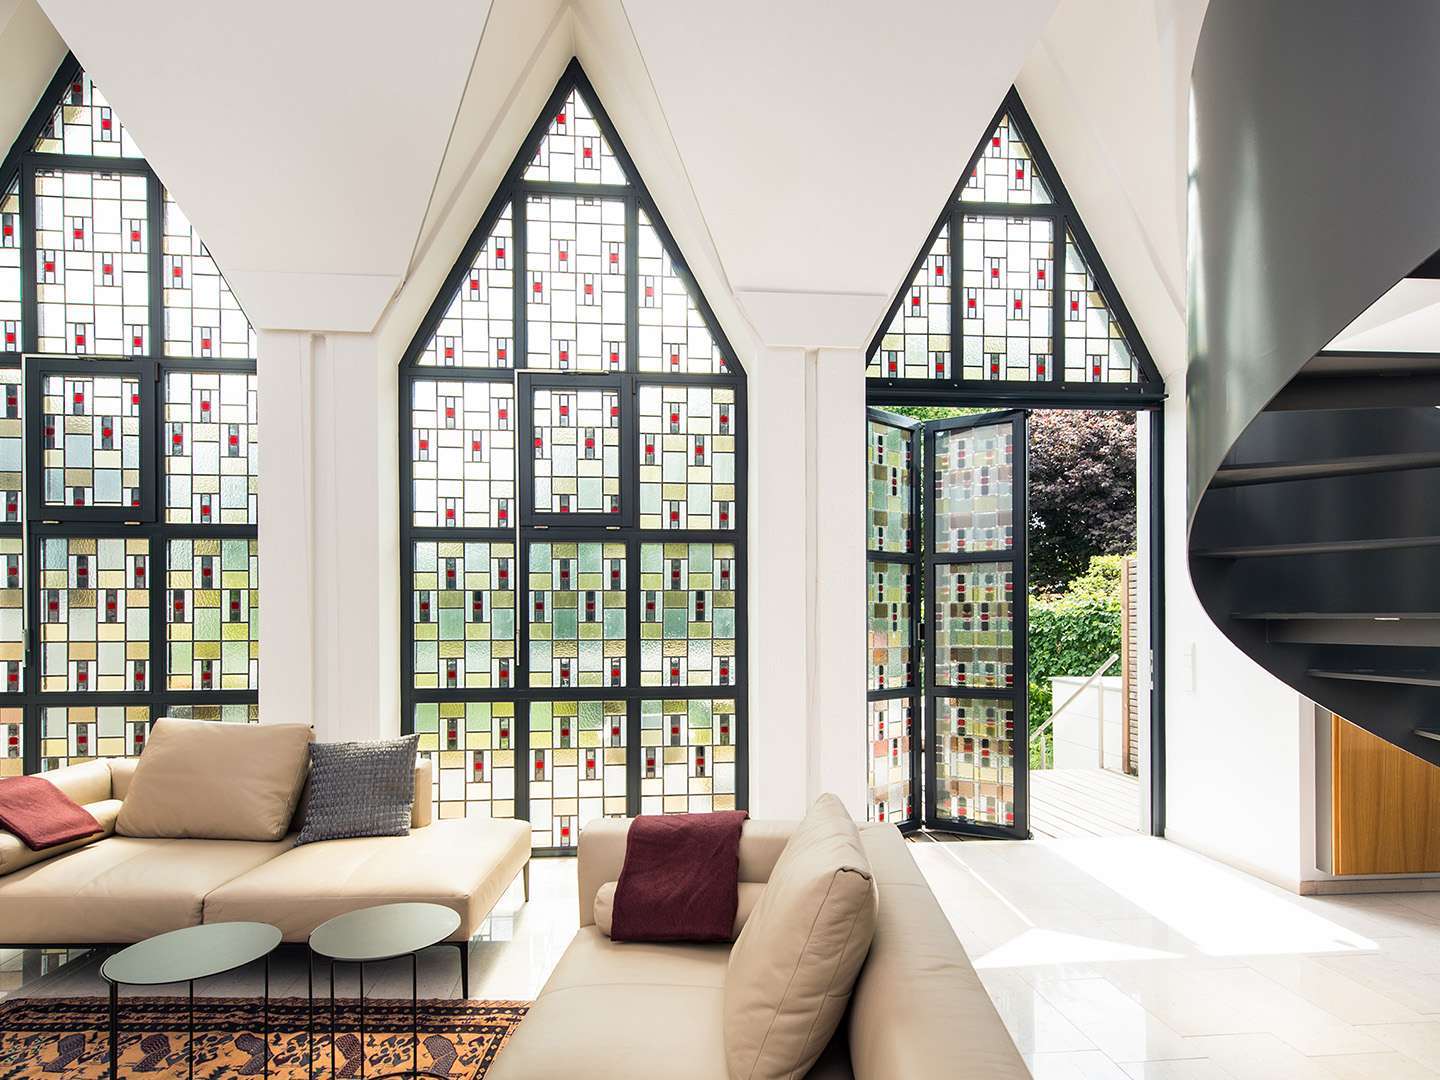 Innenansicht eines Wohnzimmers mit dreieckigen Buntglasfenstern und geöffneter Glas-Faltwand